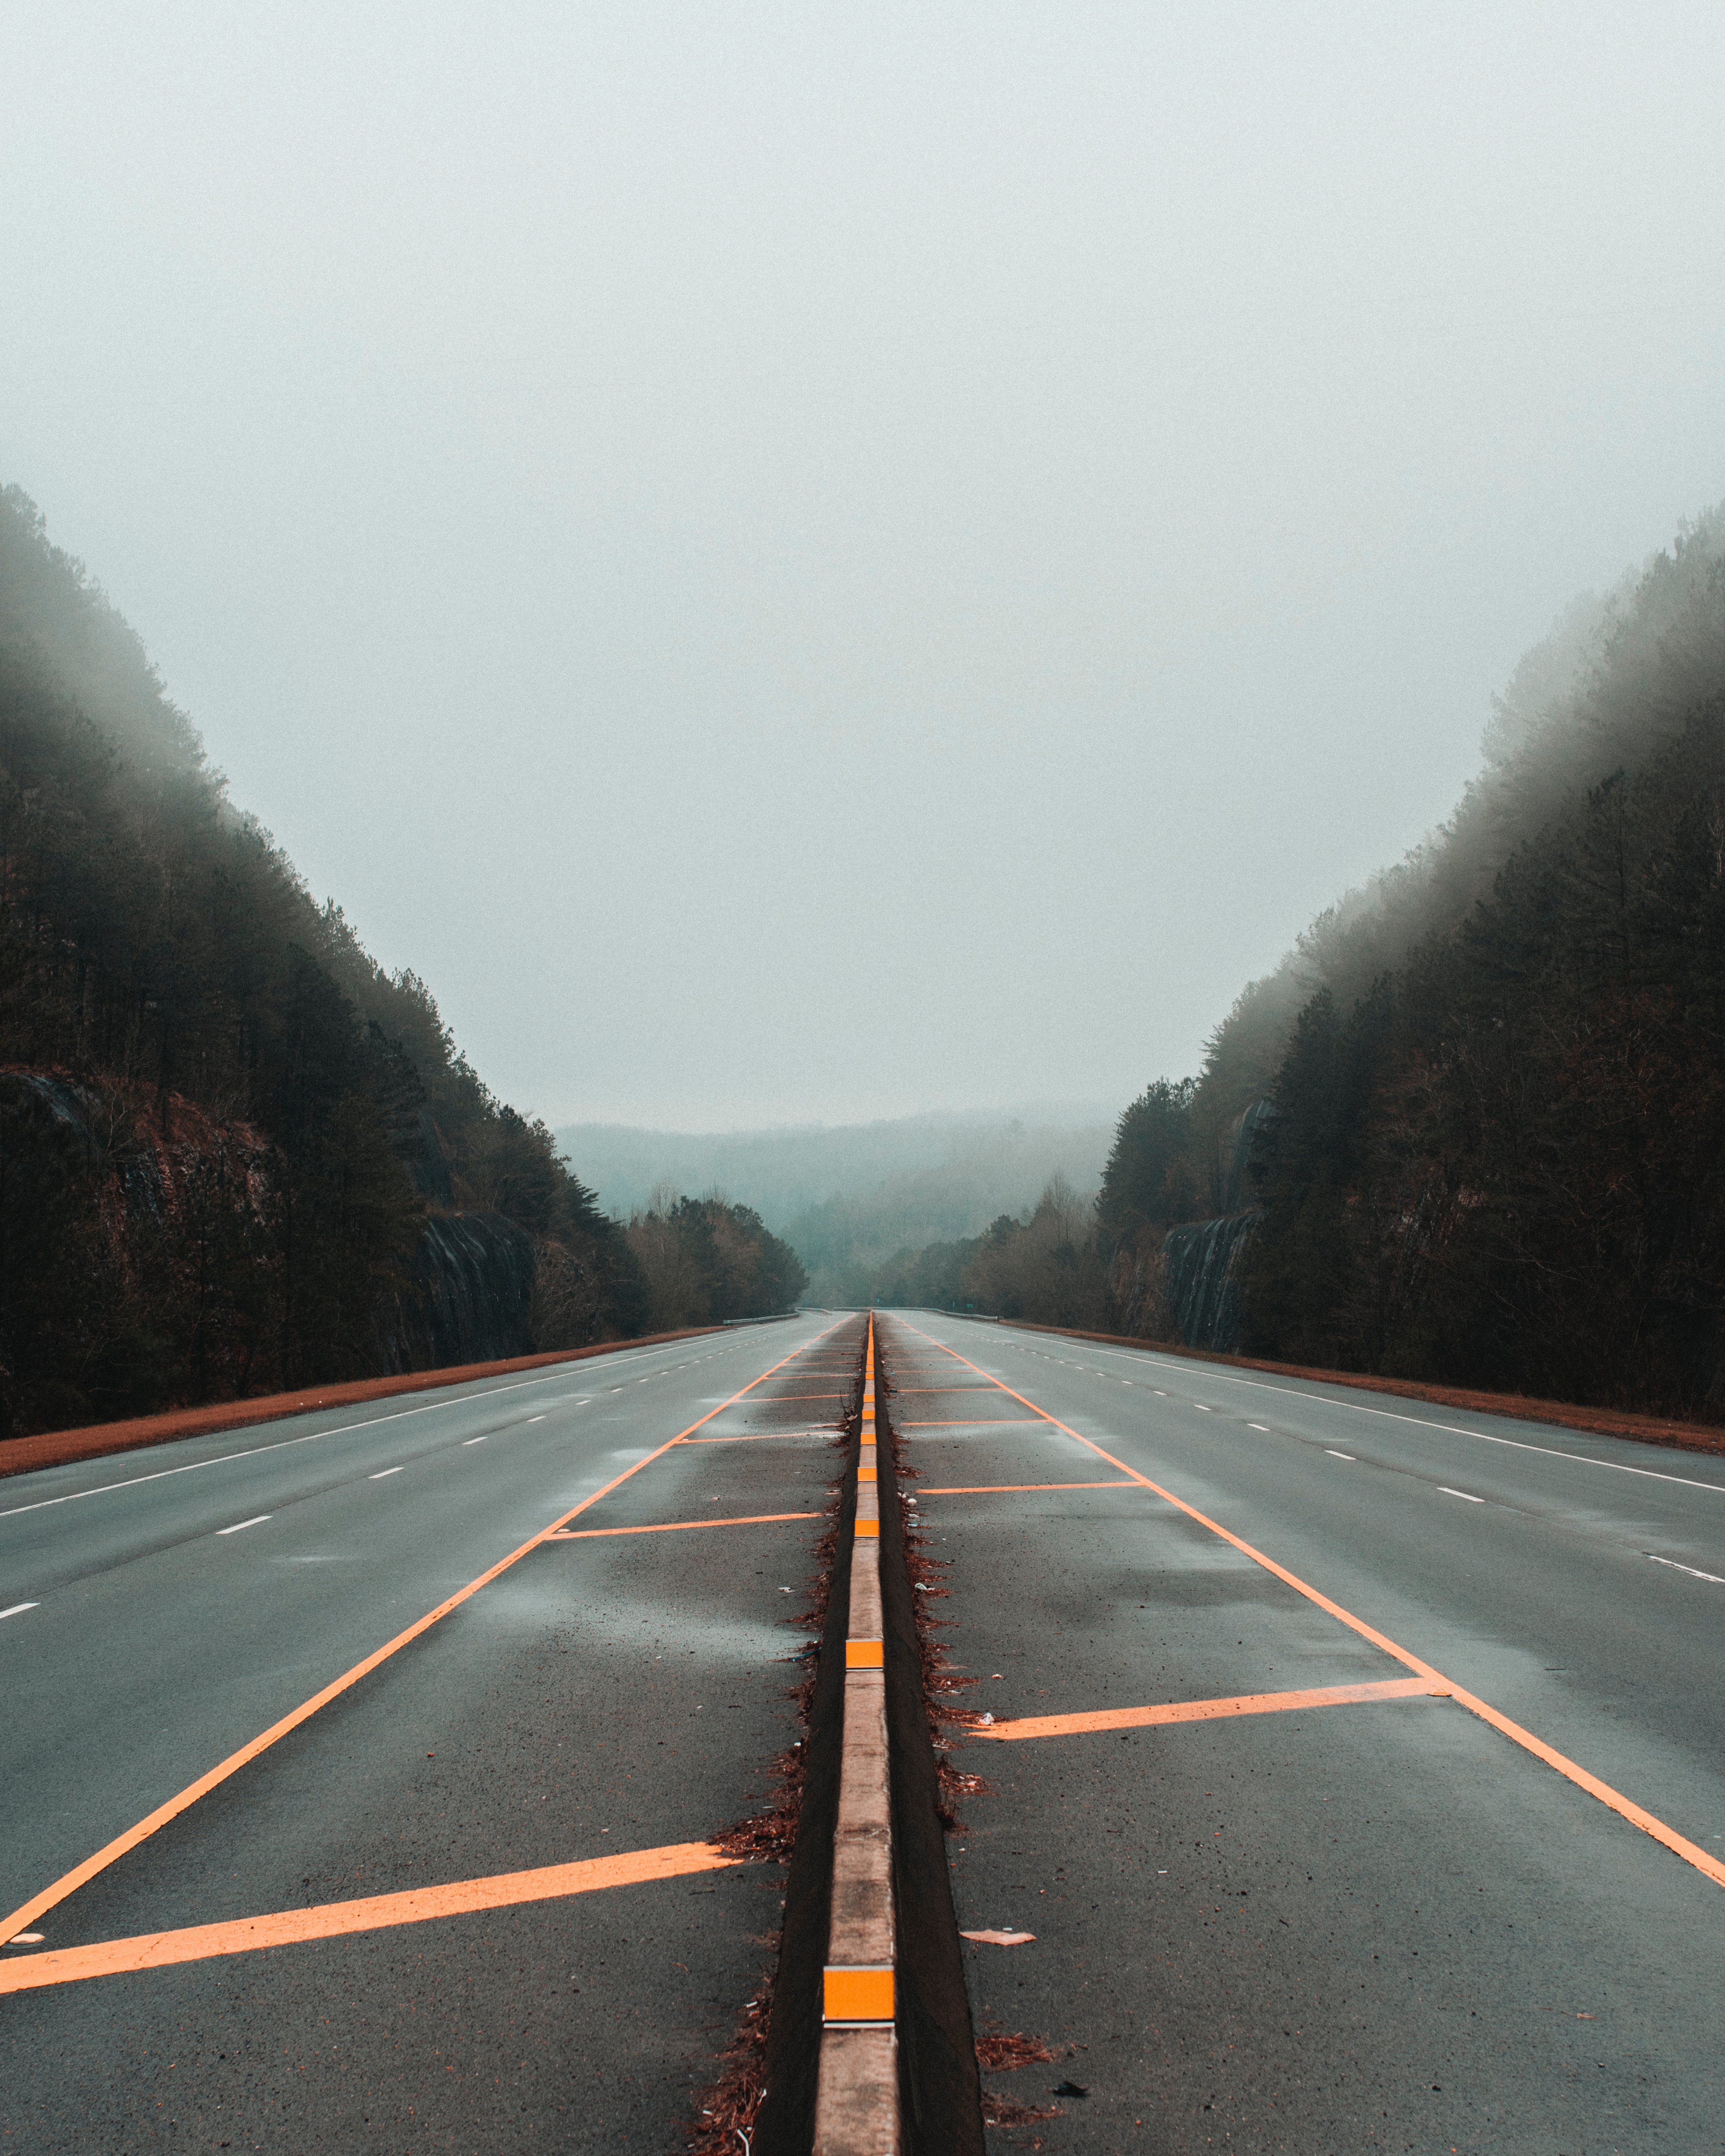 Road markup, fog, nature, lines desktop Images